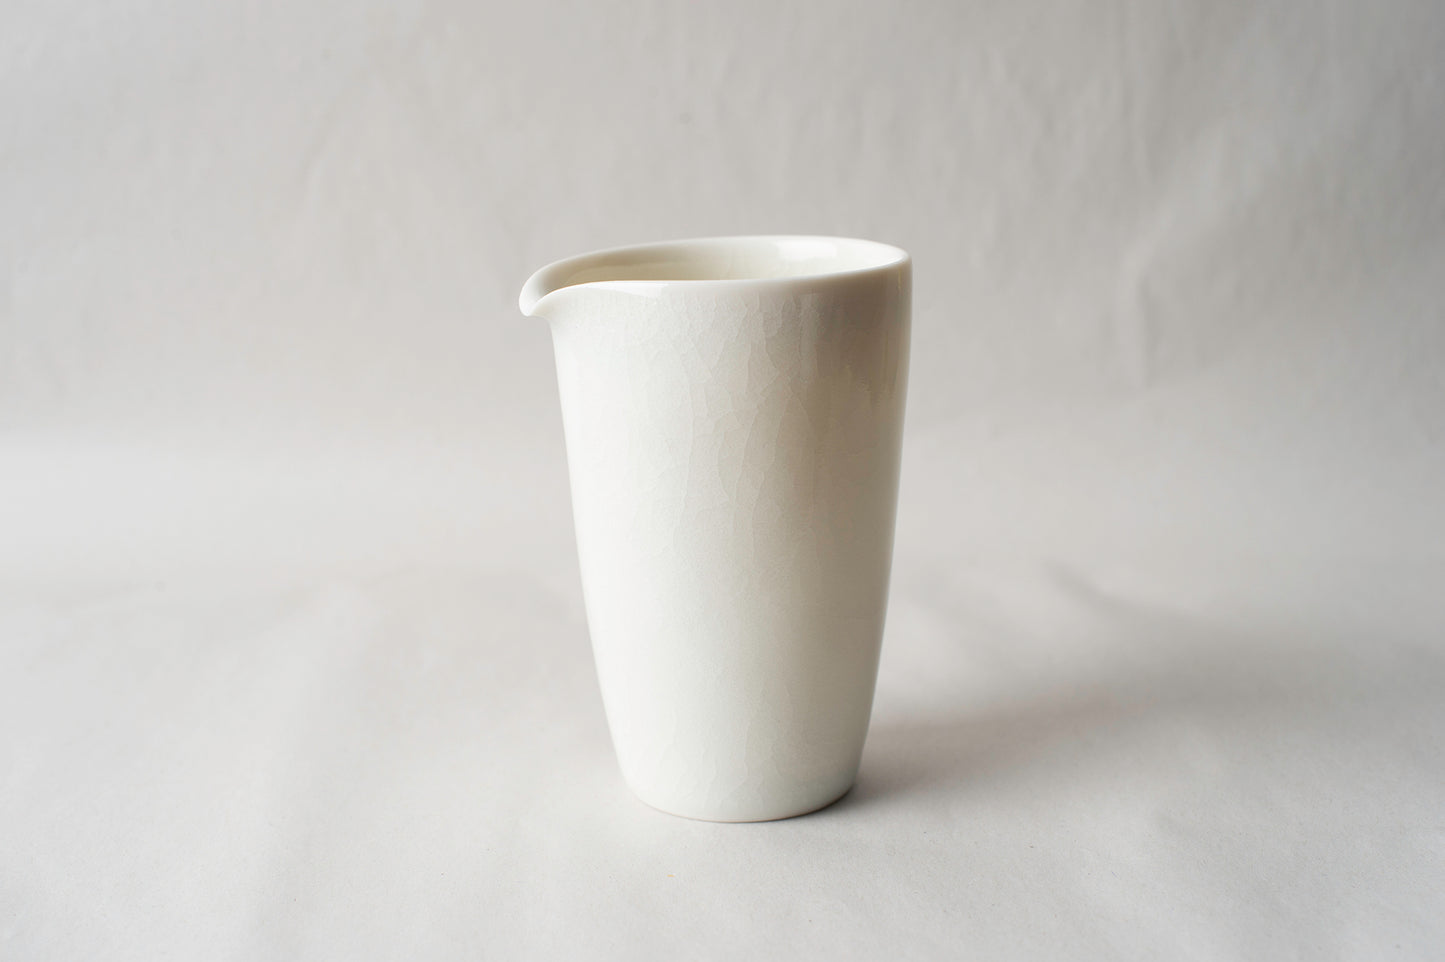 Porcelain sharing pitcher